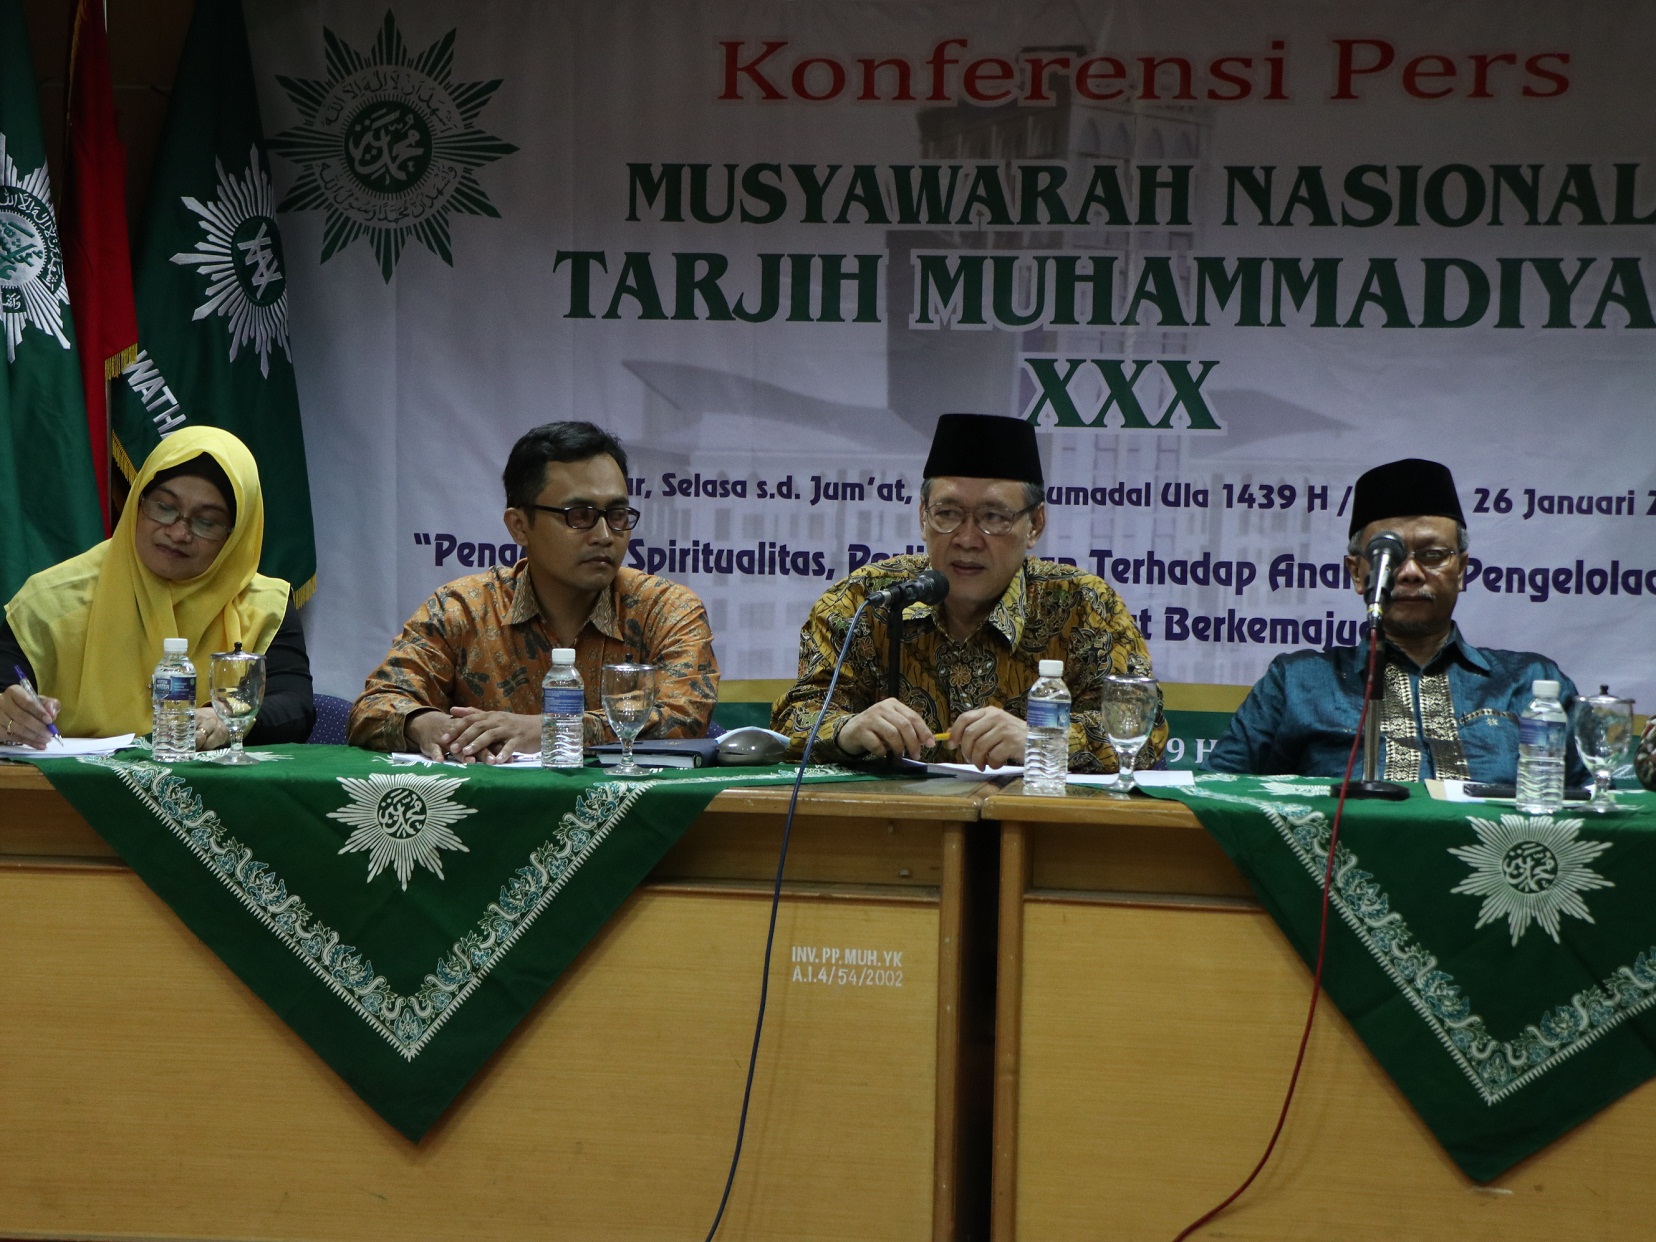 KONFERENSI: Syamsul Anwar, Ketua Majelis Tarjih dan Tajdid PP Muhammadiyah, memberi keterangan pers. (foto: ist) 